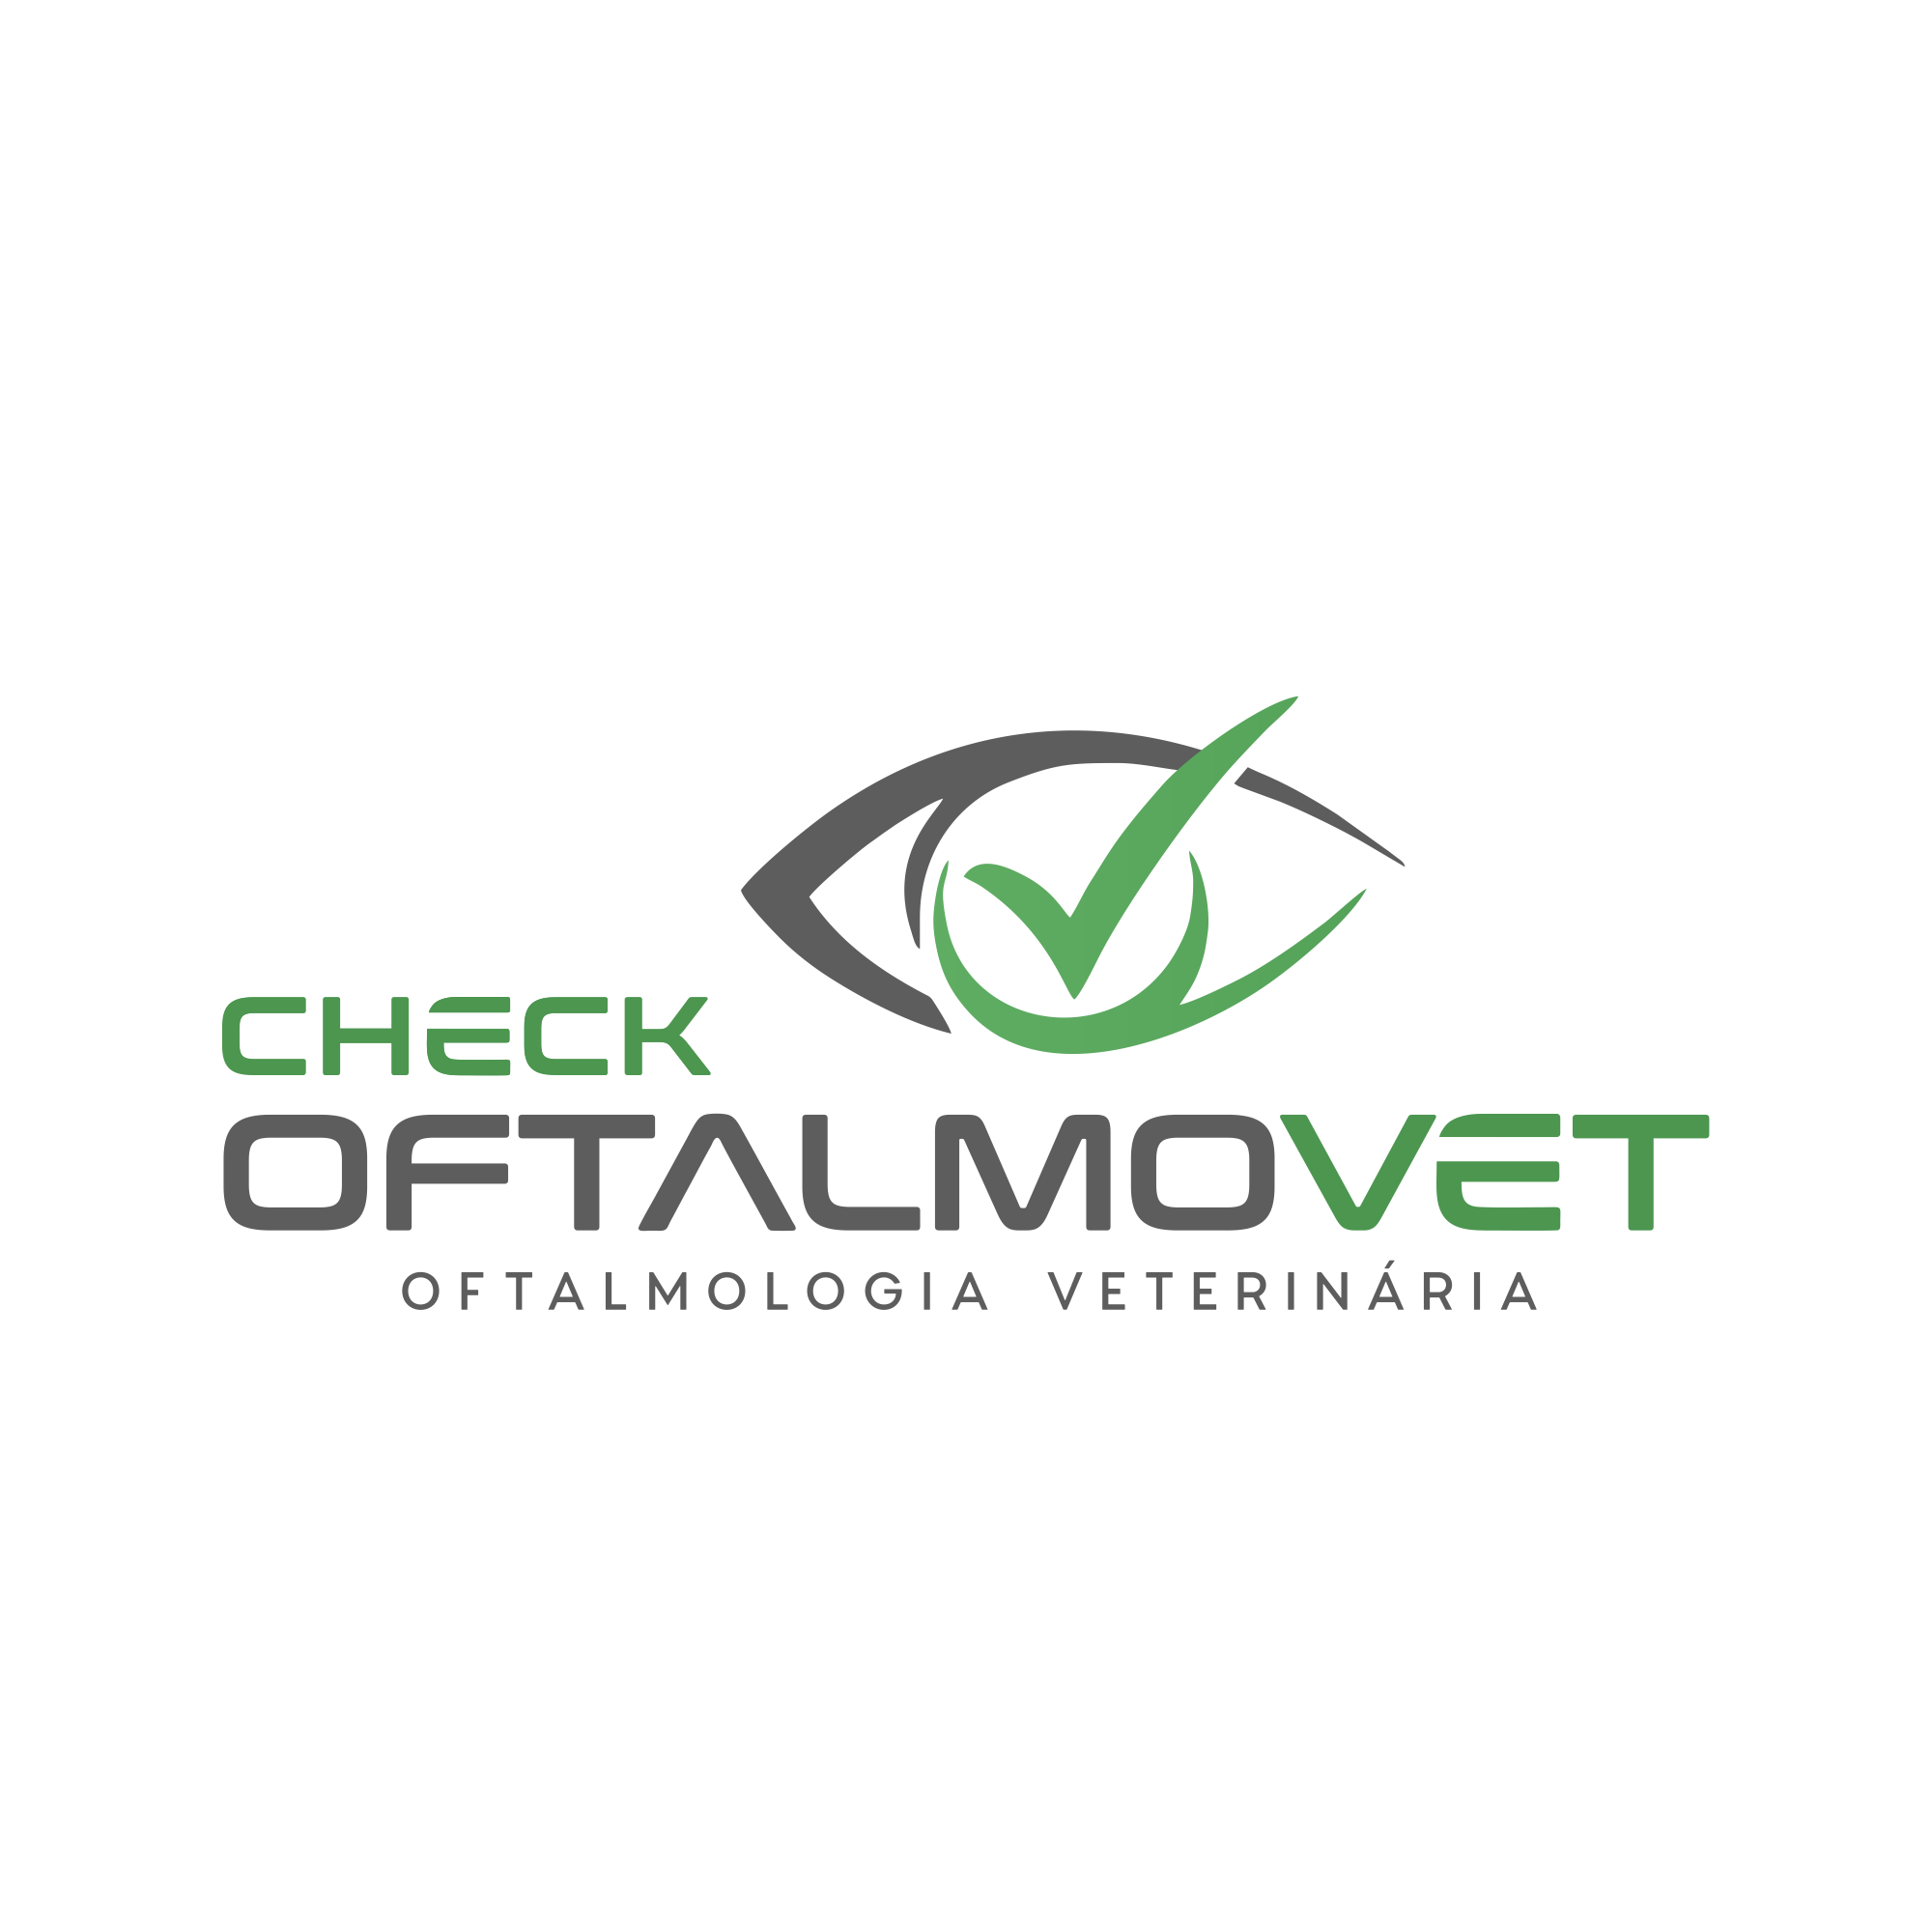 Check Oftalmovet - Oftalmologia Veterinaria